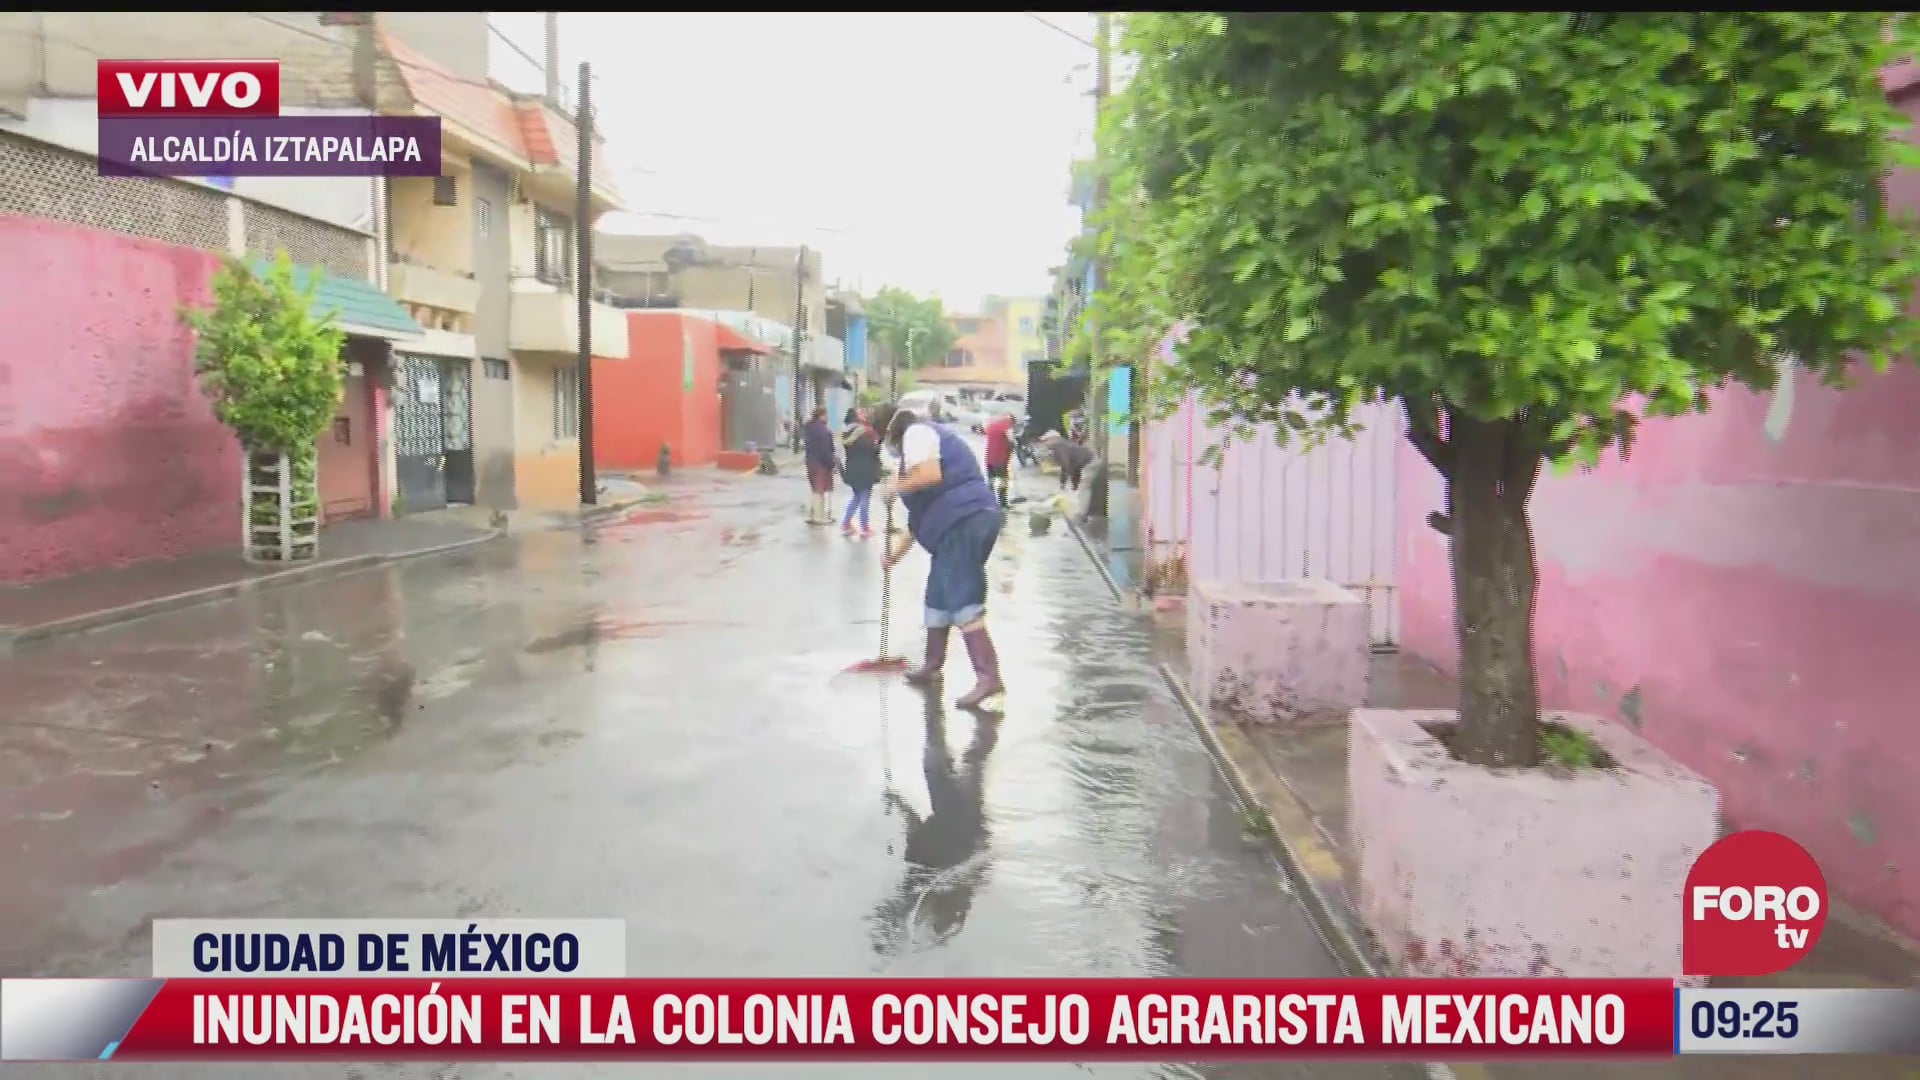 inundacion en la colonia consejo agrarista mexicano en iztapalapa